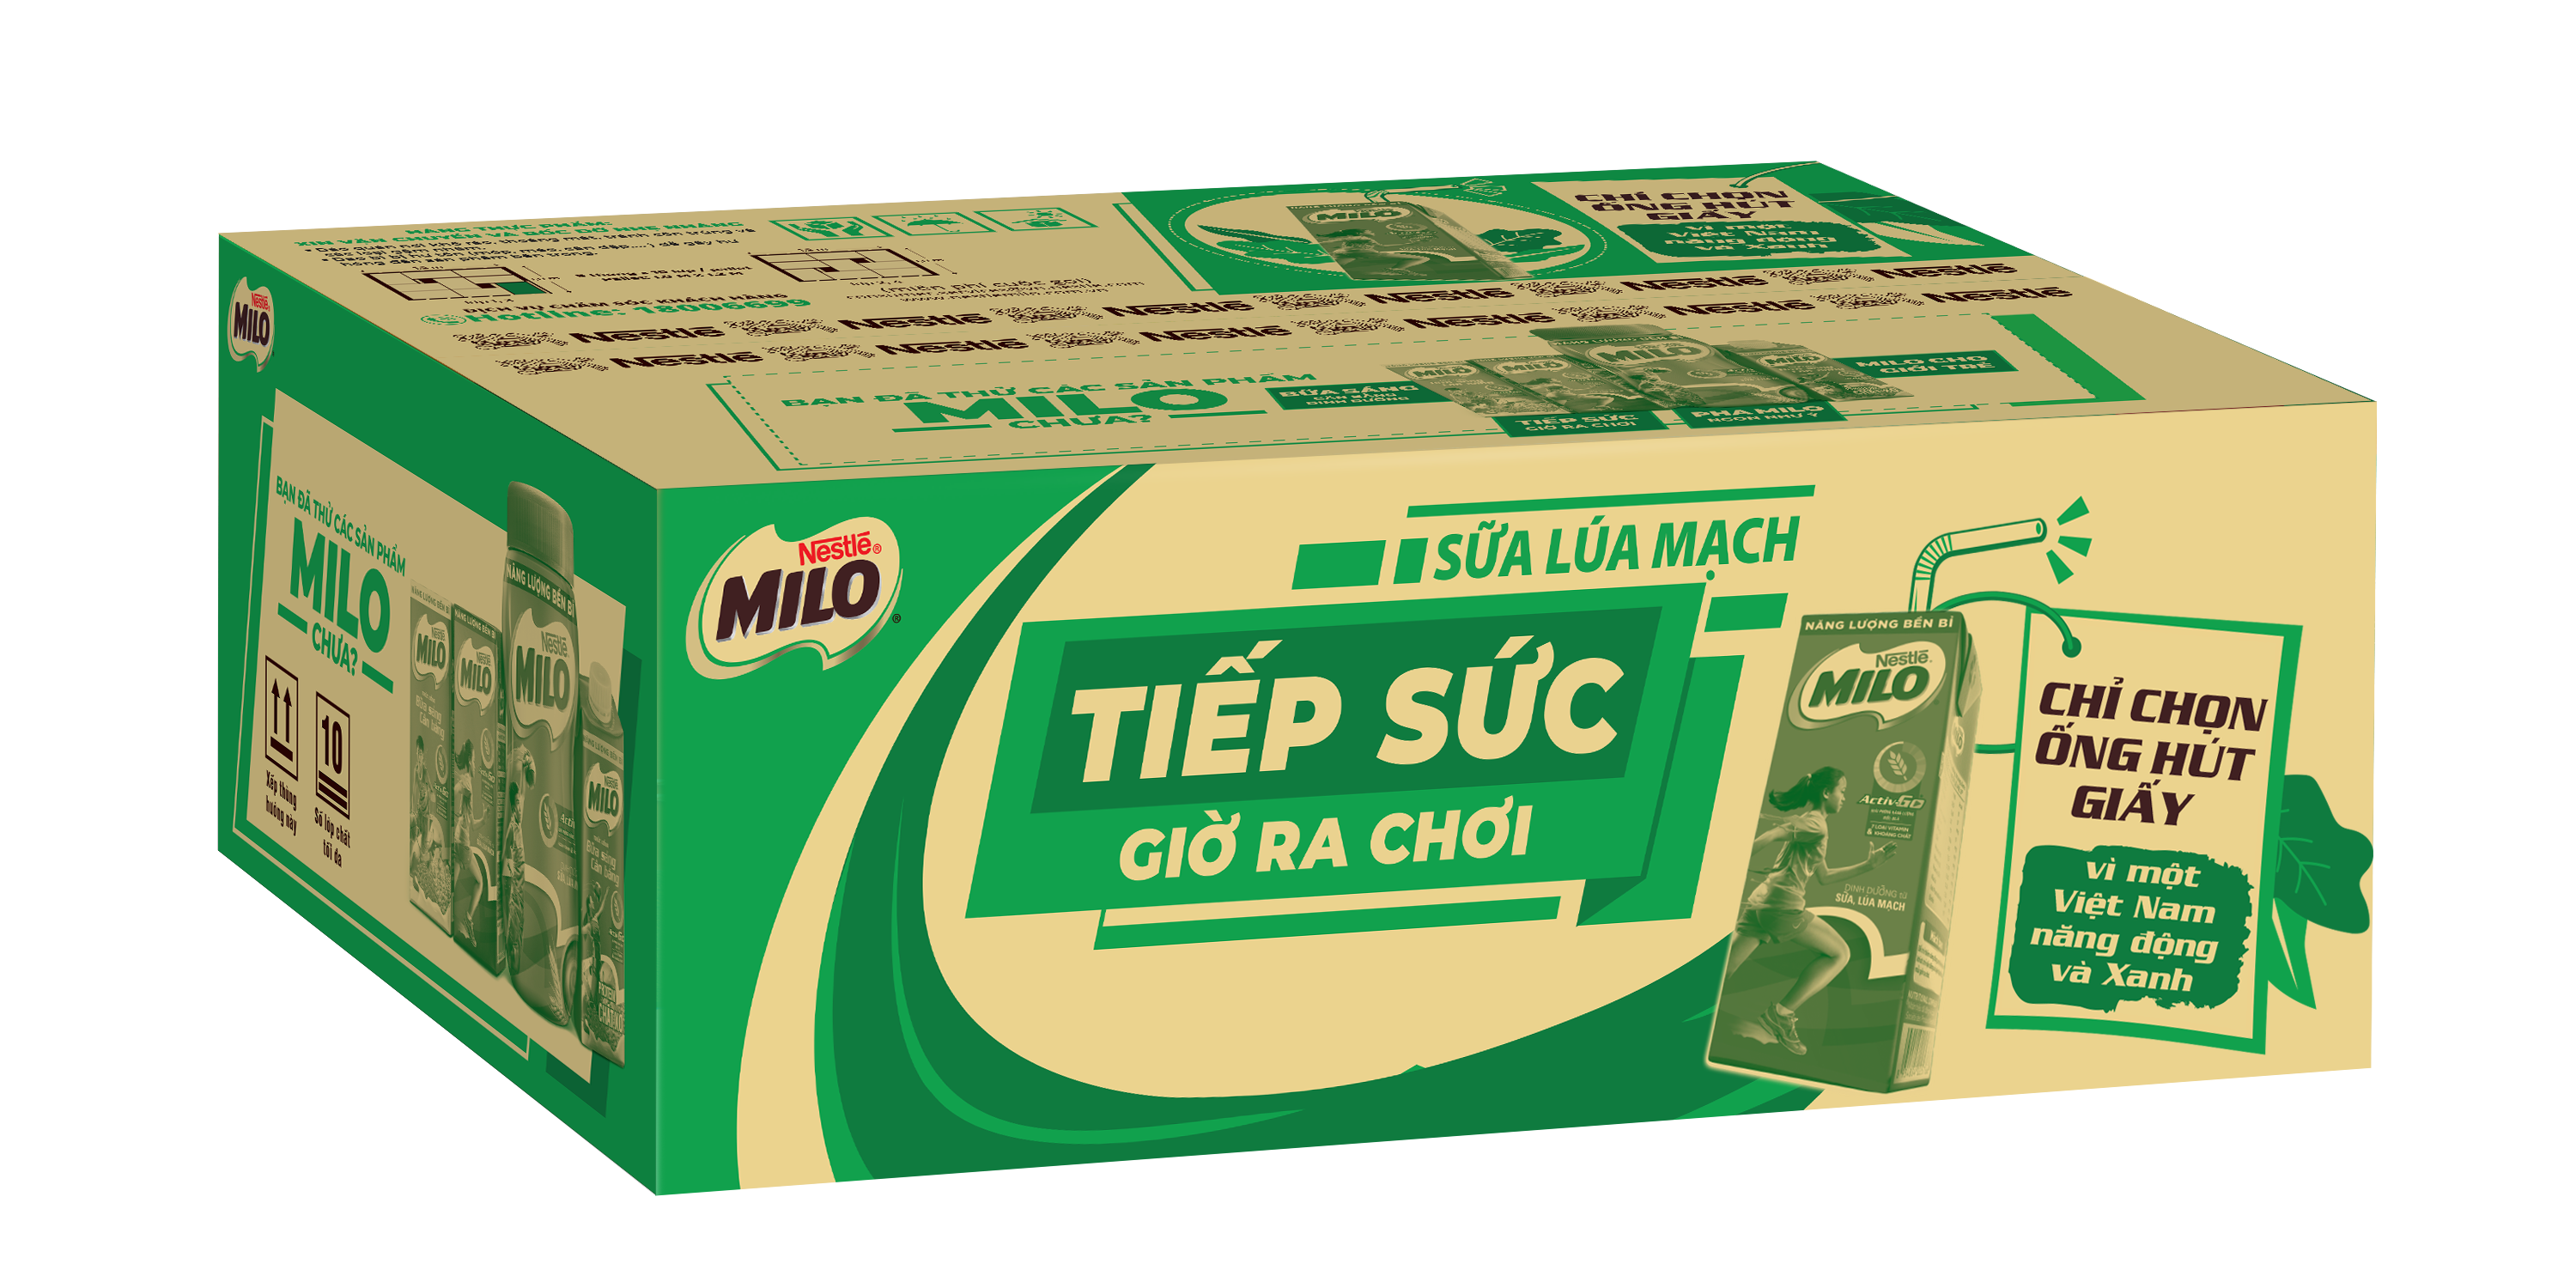 Thùng sữa lúa mạch Nestlé Milo (48 hộp x 180ml) [Tặng 1 túi đeo chéo - Giao mẫu ngẫu nhiên]